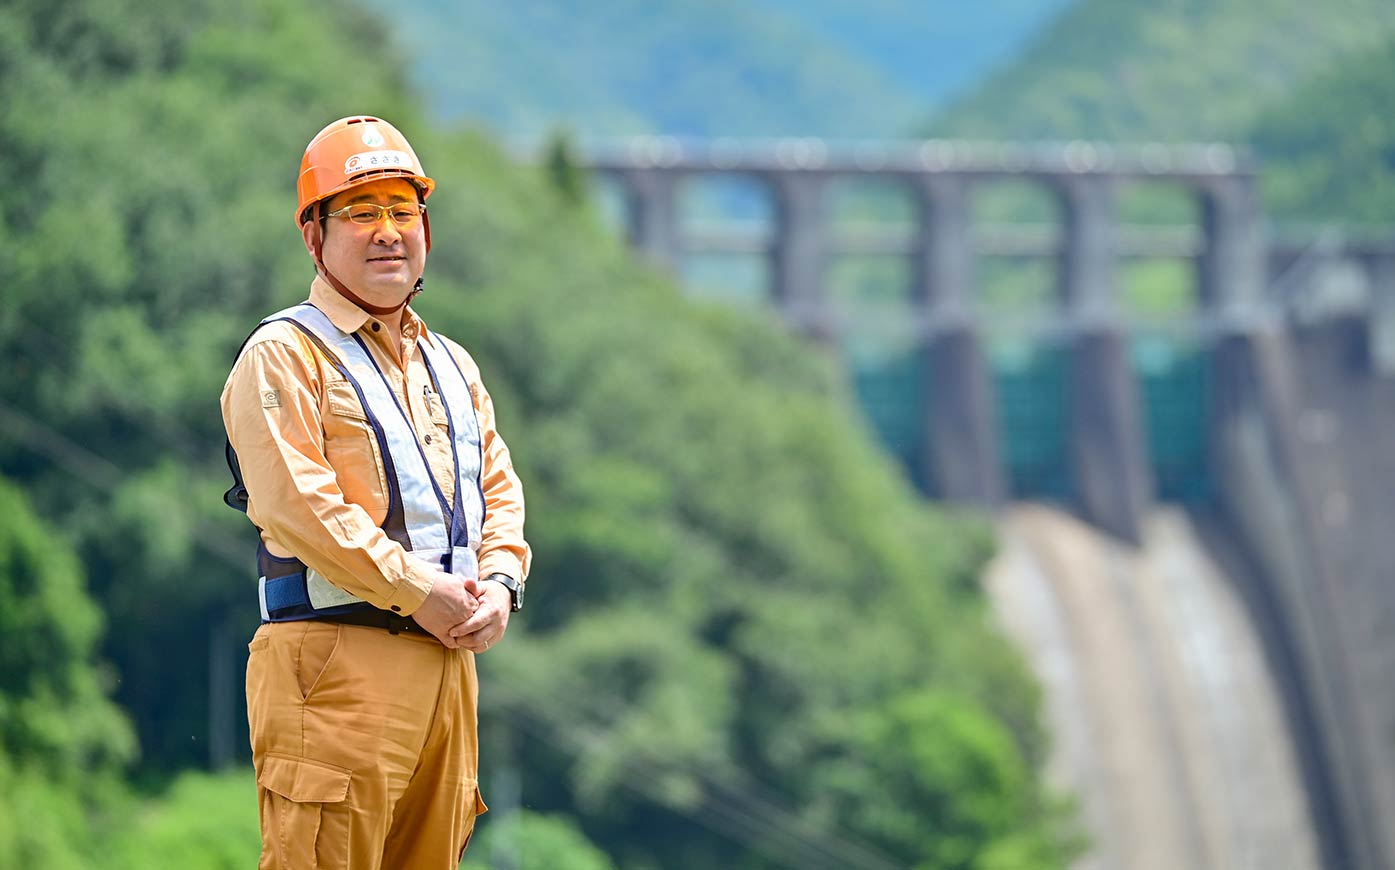 Director of Shin-Maruyama Dam JV Construction Office Keiji Sasaki